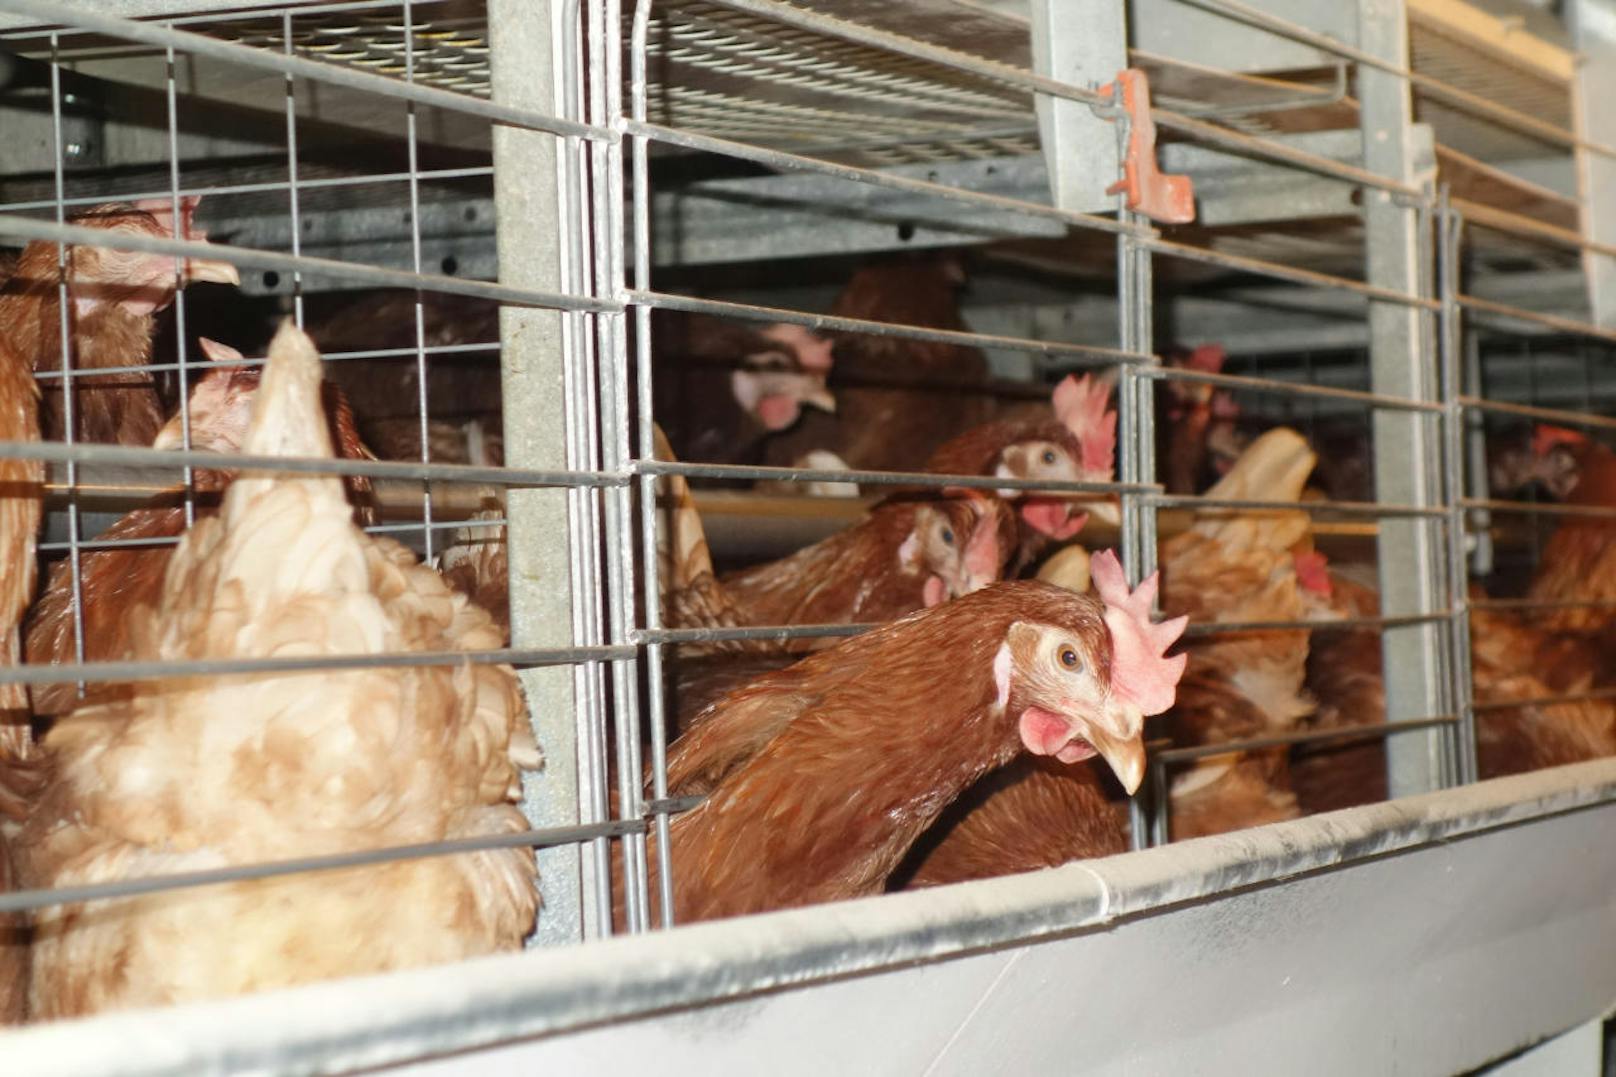 "Tausende Hühner sind in dem zweistöckigen Betrieb in geschlossene Käfiganlagen eingesperrt - einen Zugang zum Stallboden gibt es nicht, da dieser mit Gittern versperrt ist.", erklärt David Richter vom VGT.